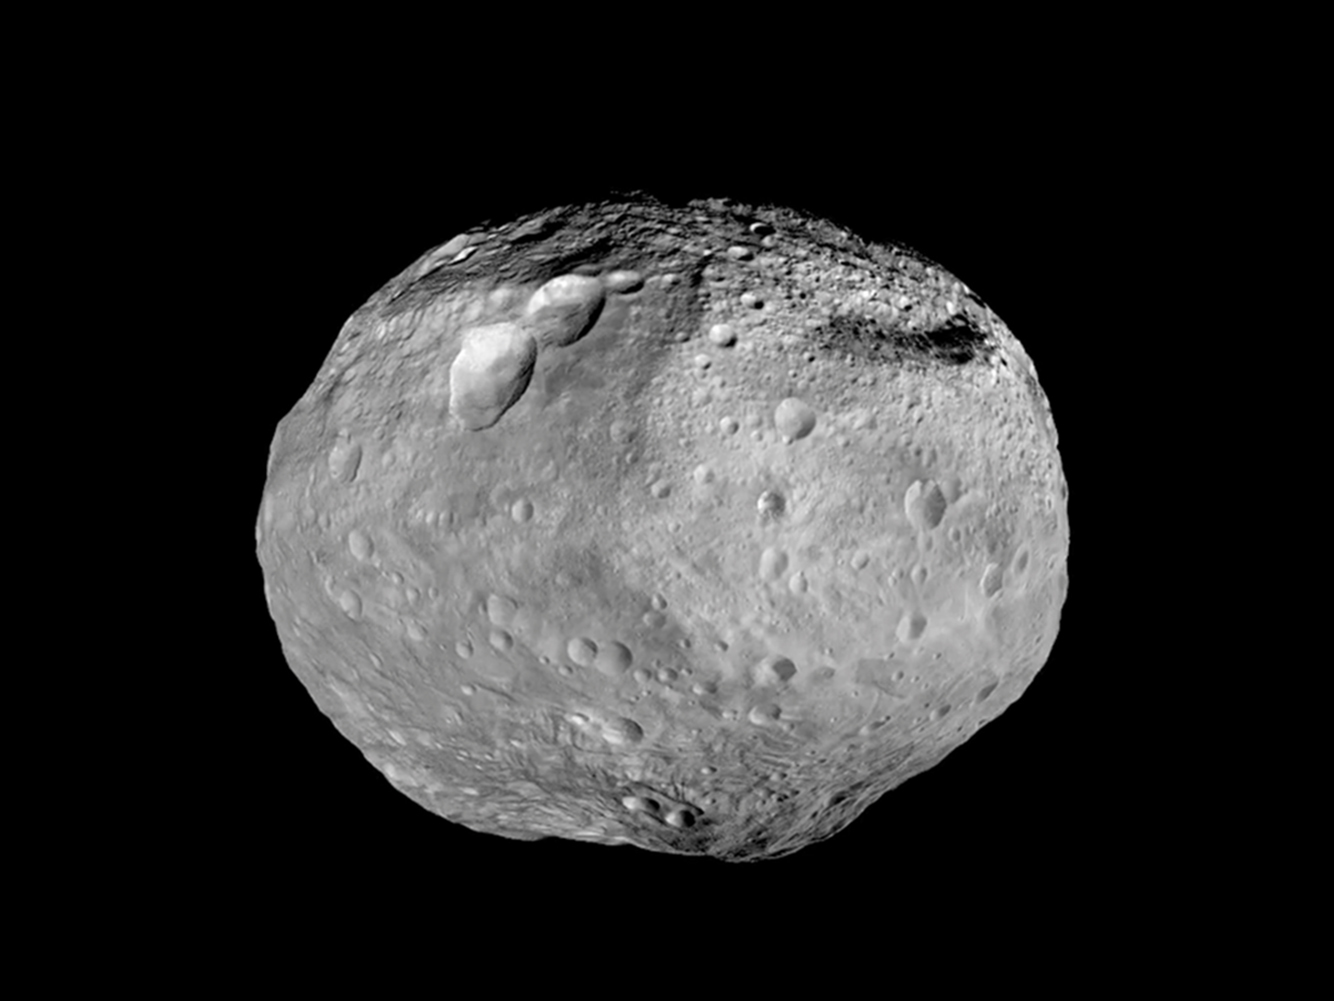 Μικρός αστεροειδής θα περάσει ξυστά από τη Γη στις 12 Οκτωβρίου